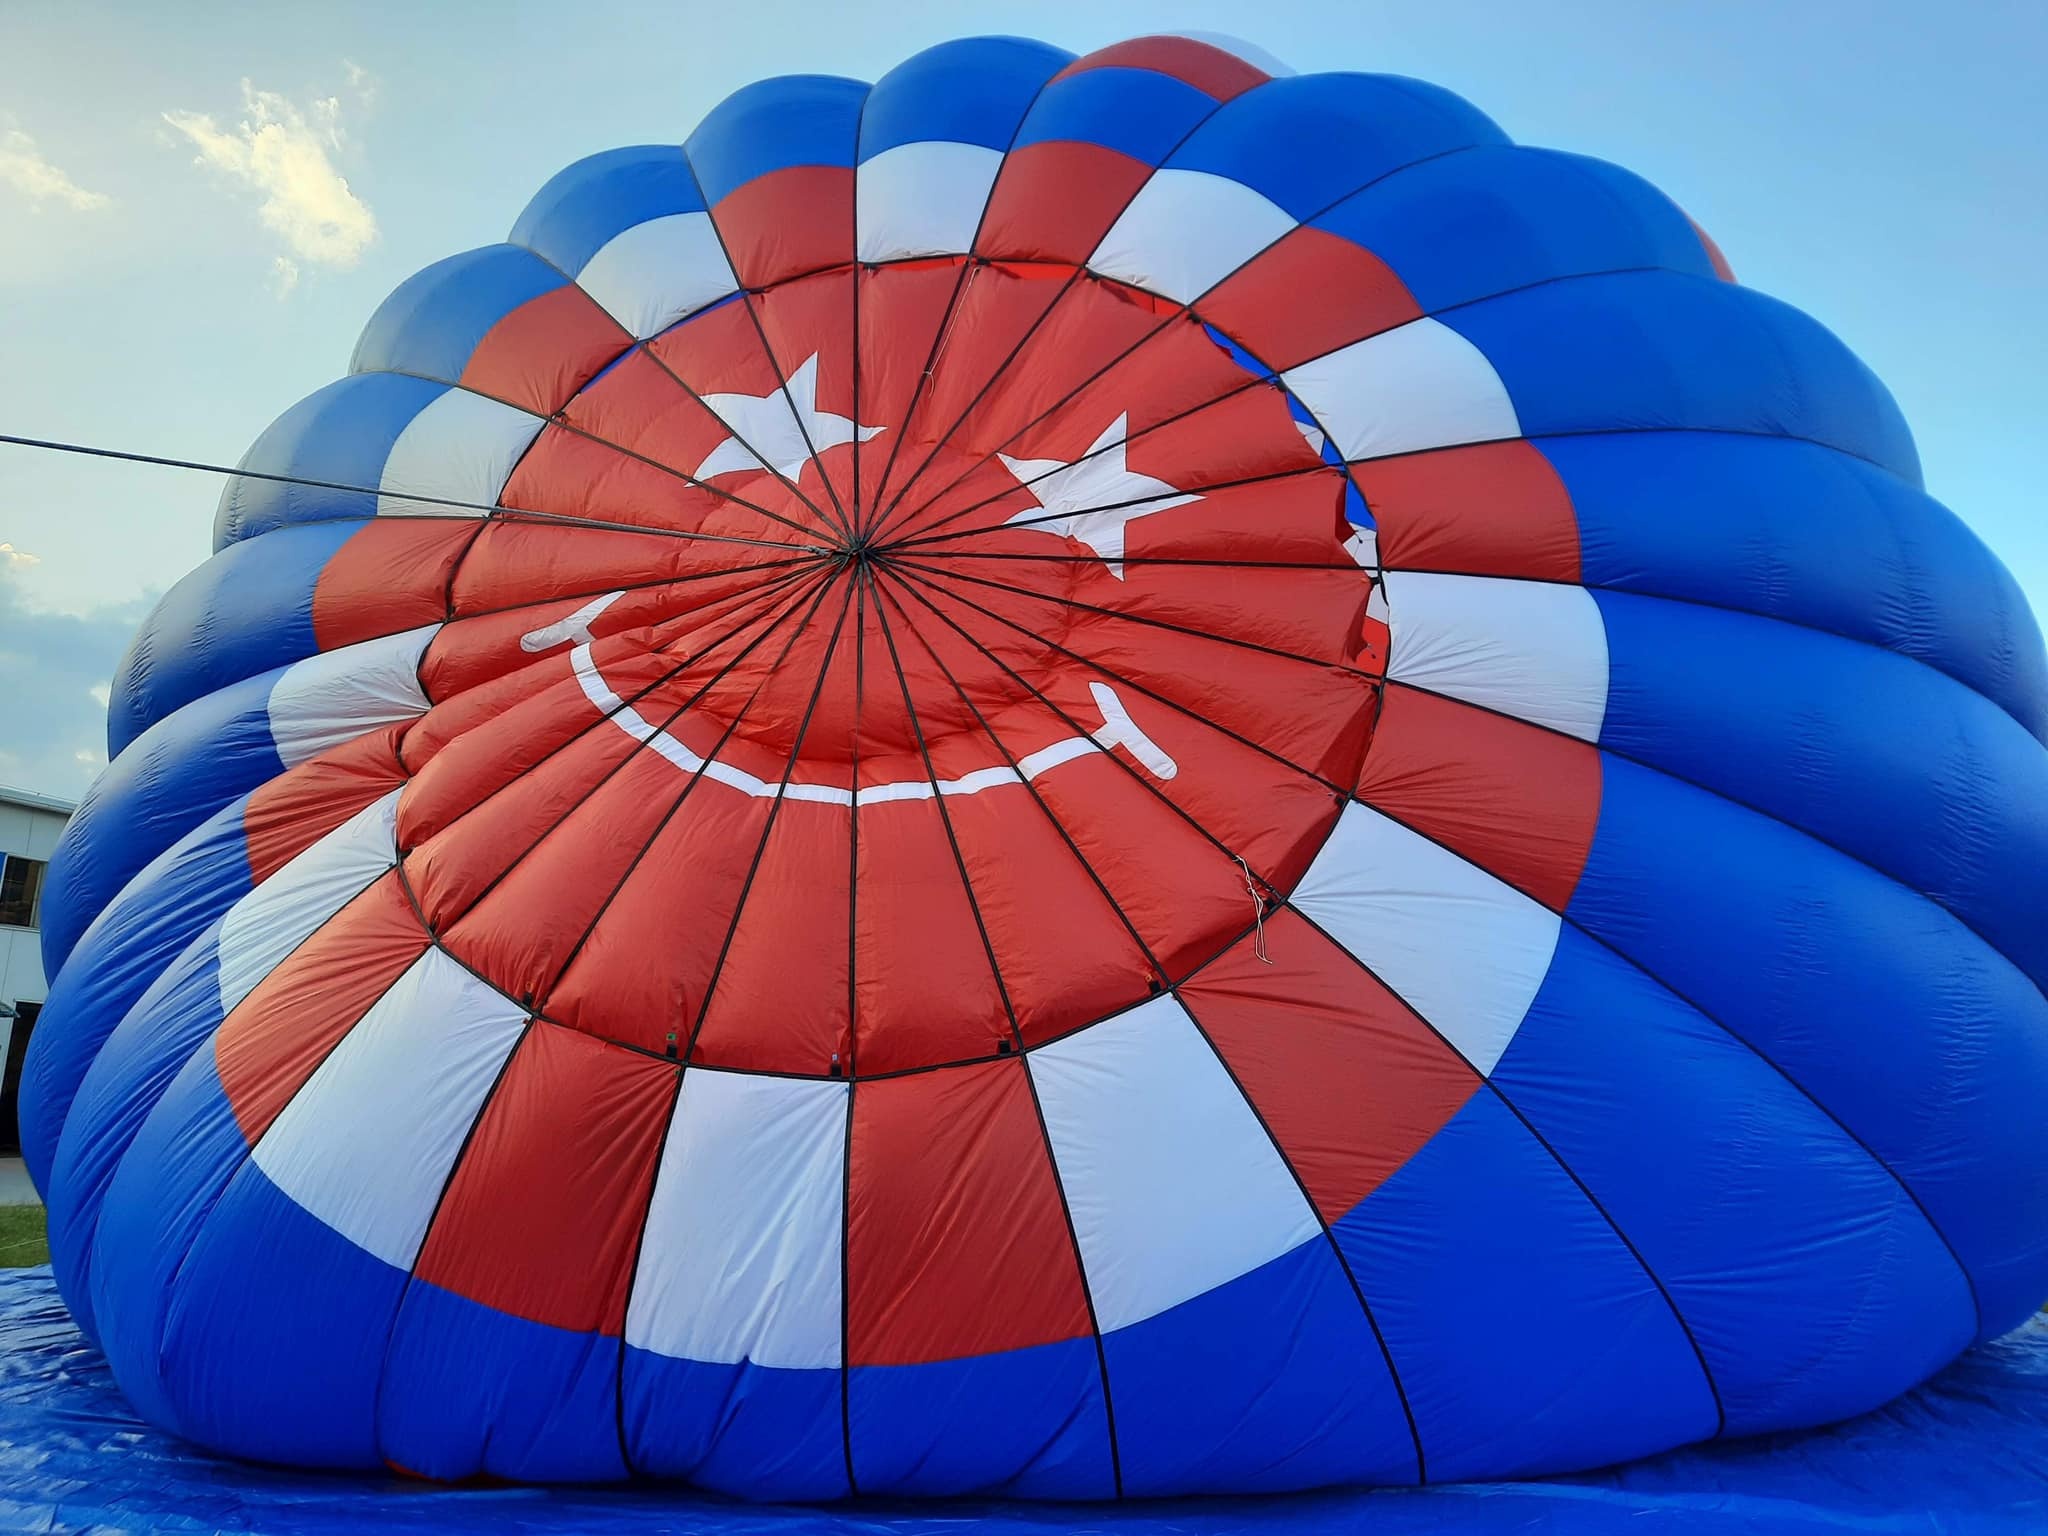 Hopper Ballooning: A hopper before a starting procedure, Cloud Hopper, Balloon Parachute. 2050x1540 HD Wallpaper.